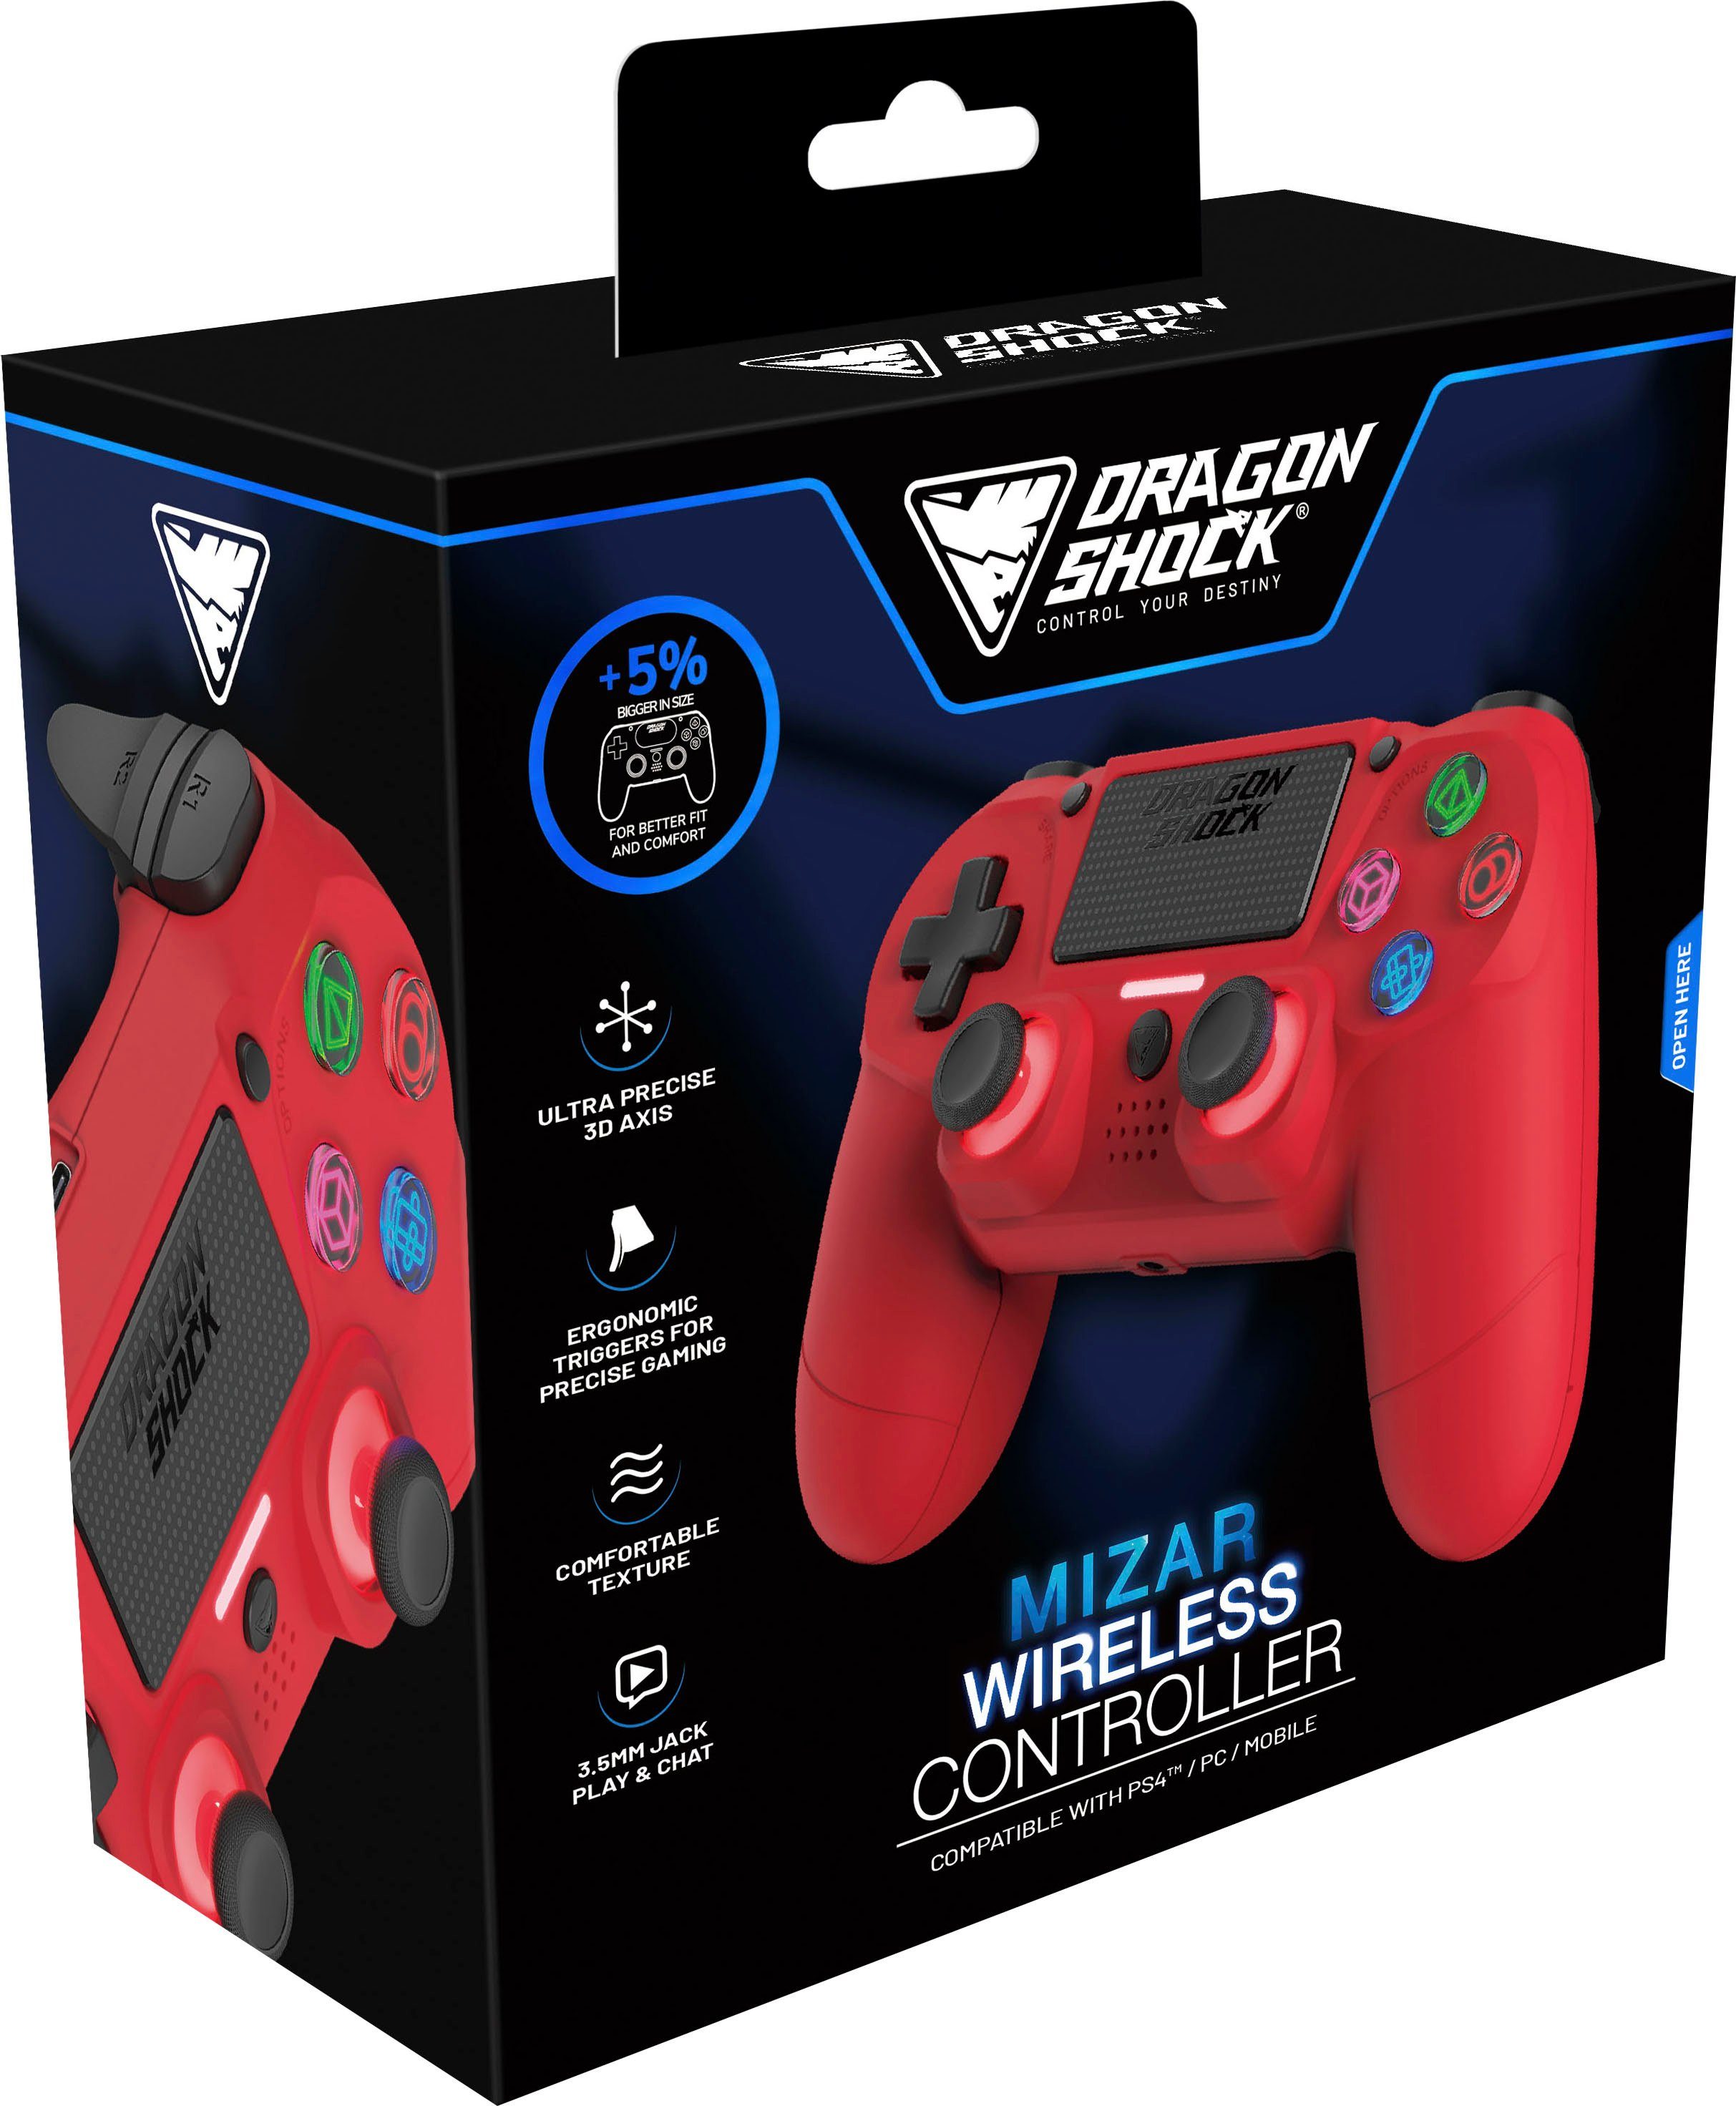 DRAGONSHOCK Mizar Wireless für PS4 rot Controller